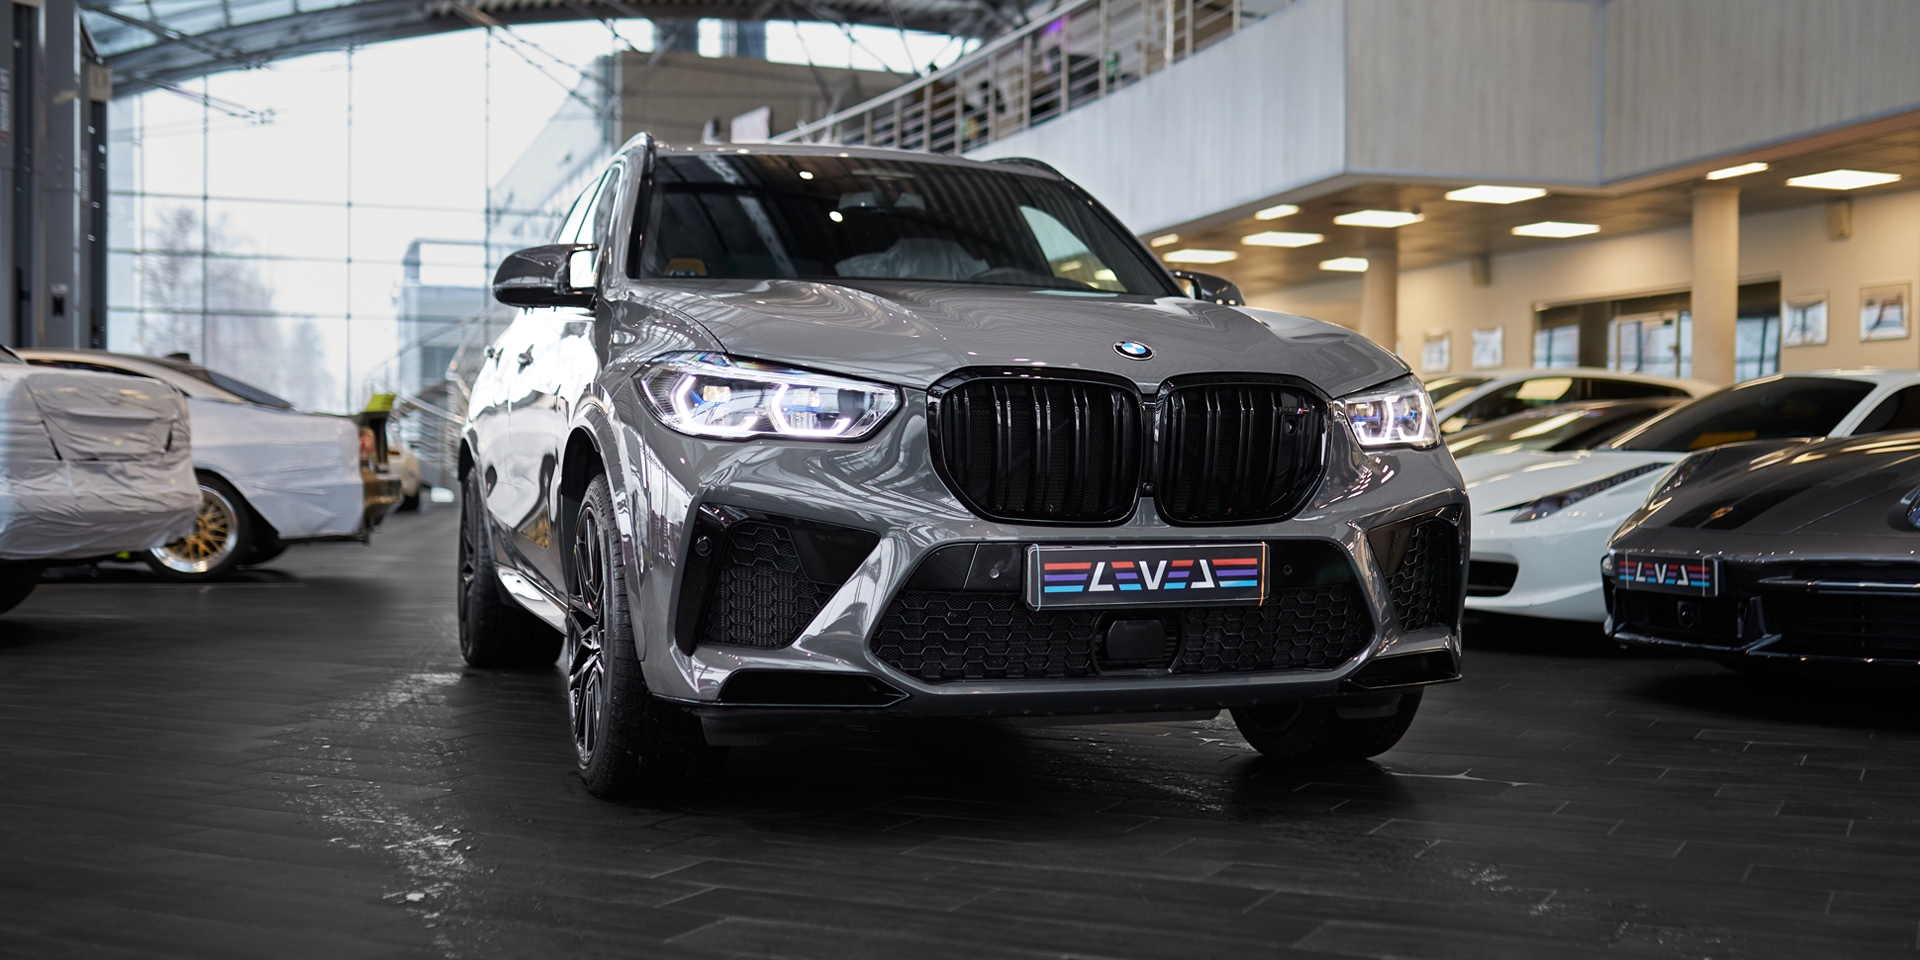 BMW X5m - Превосходство по всем направлениям